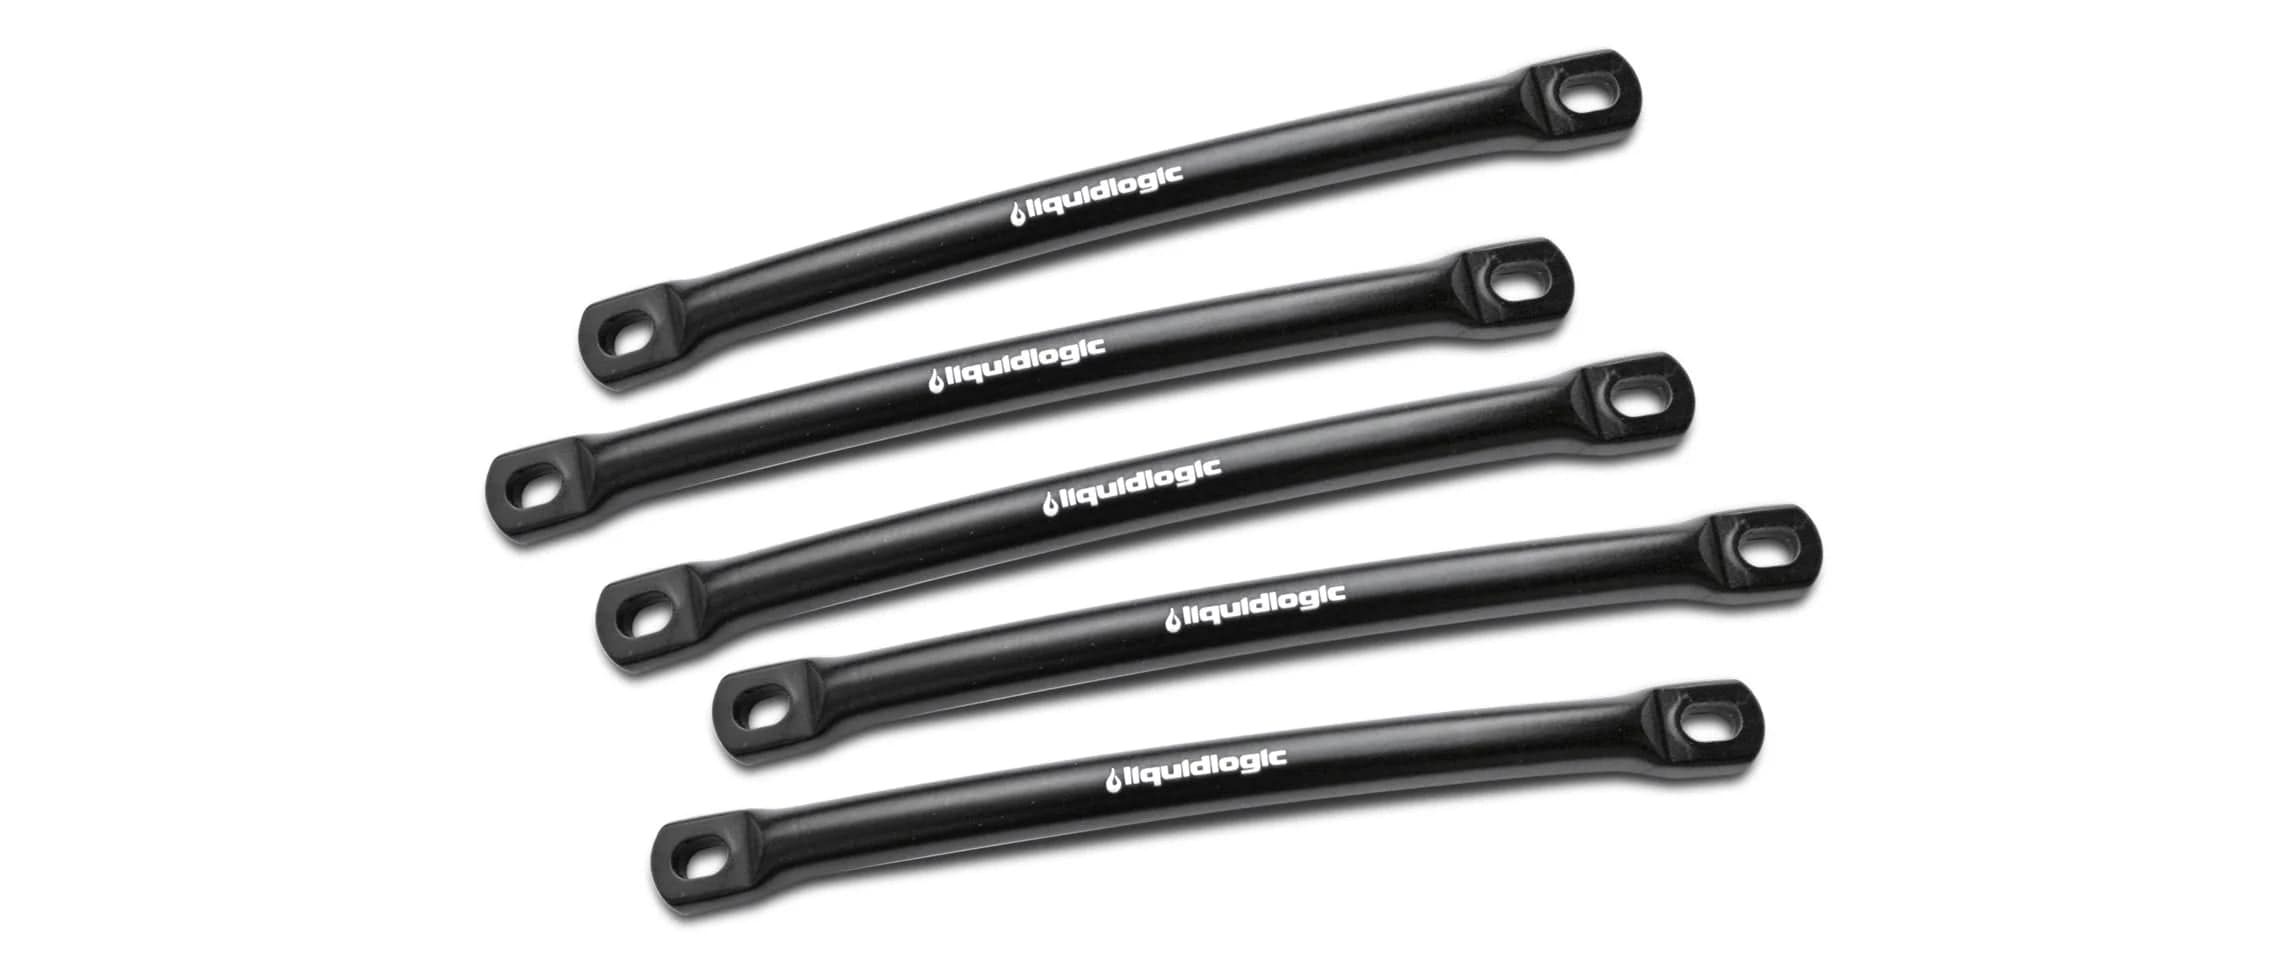 Liquidlogic Kayaks Aluminum Security Bar Kit - Set of 5